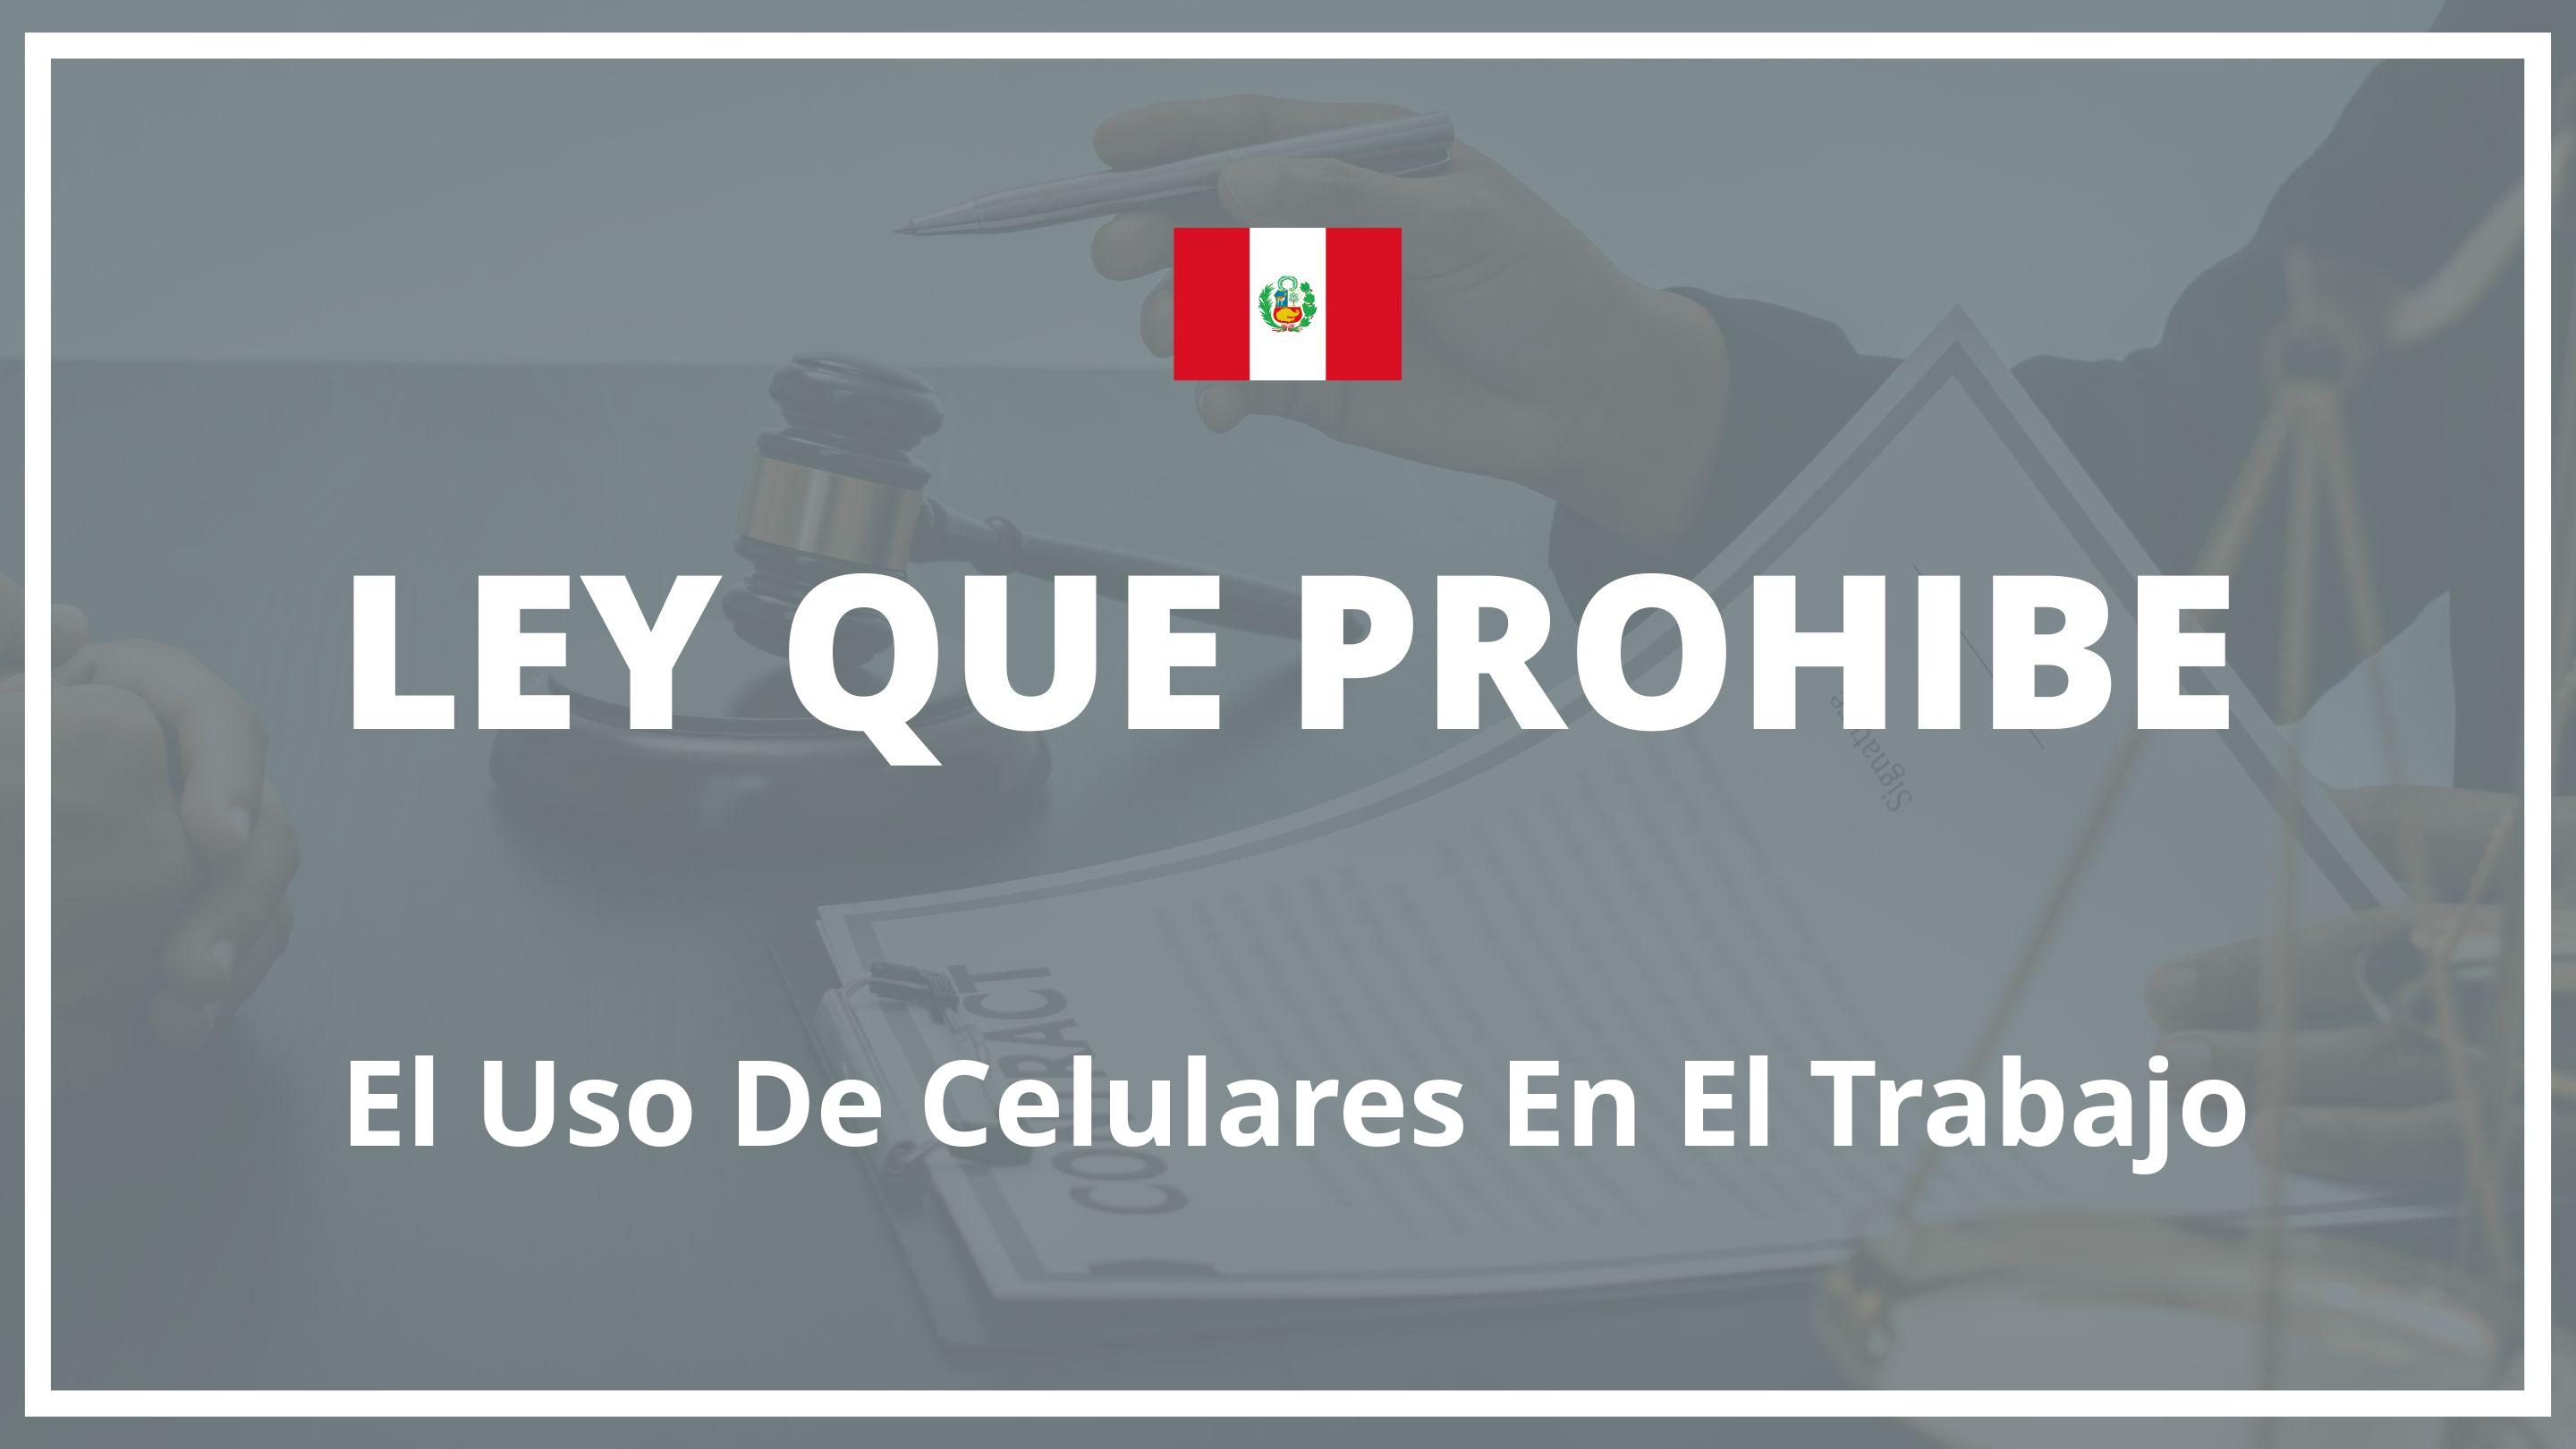 Ley que prohibe el uso de celulares en el trabajo Peru